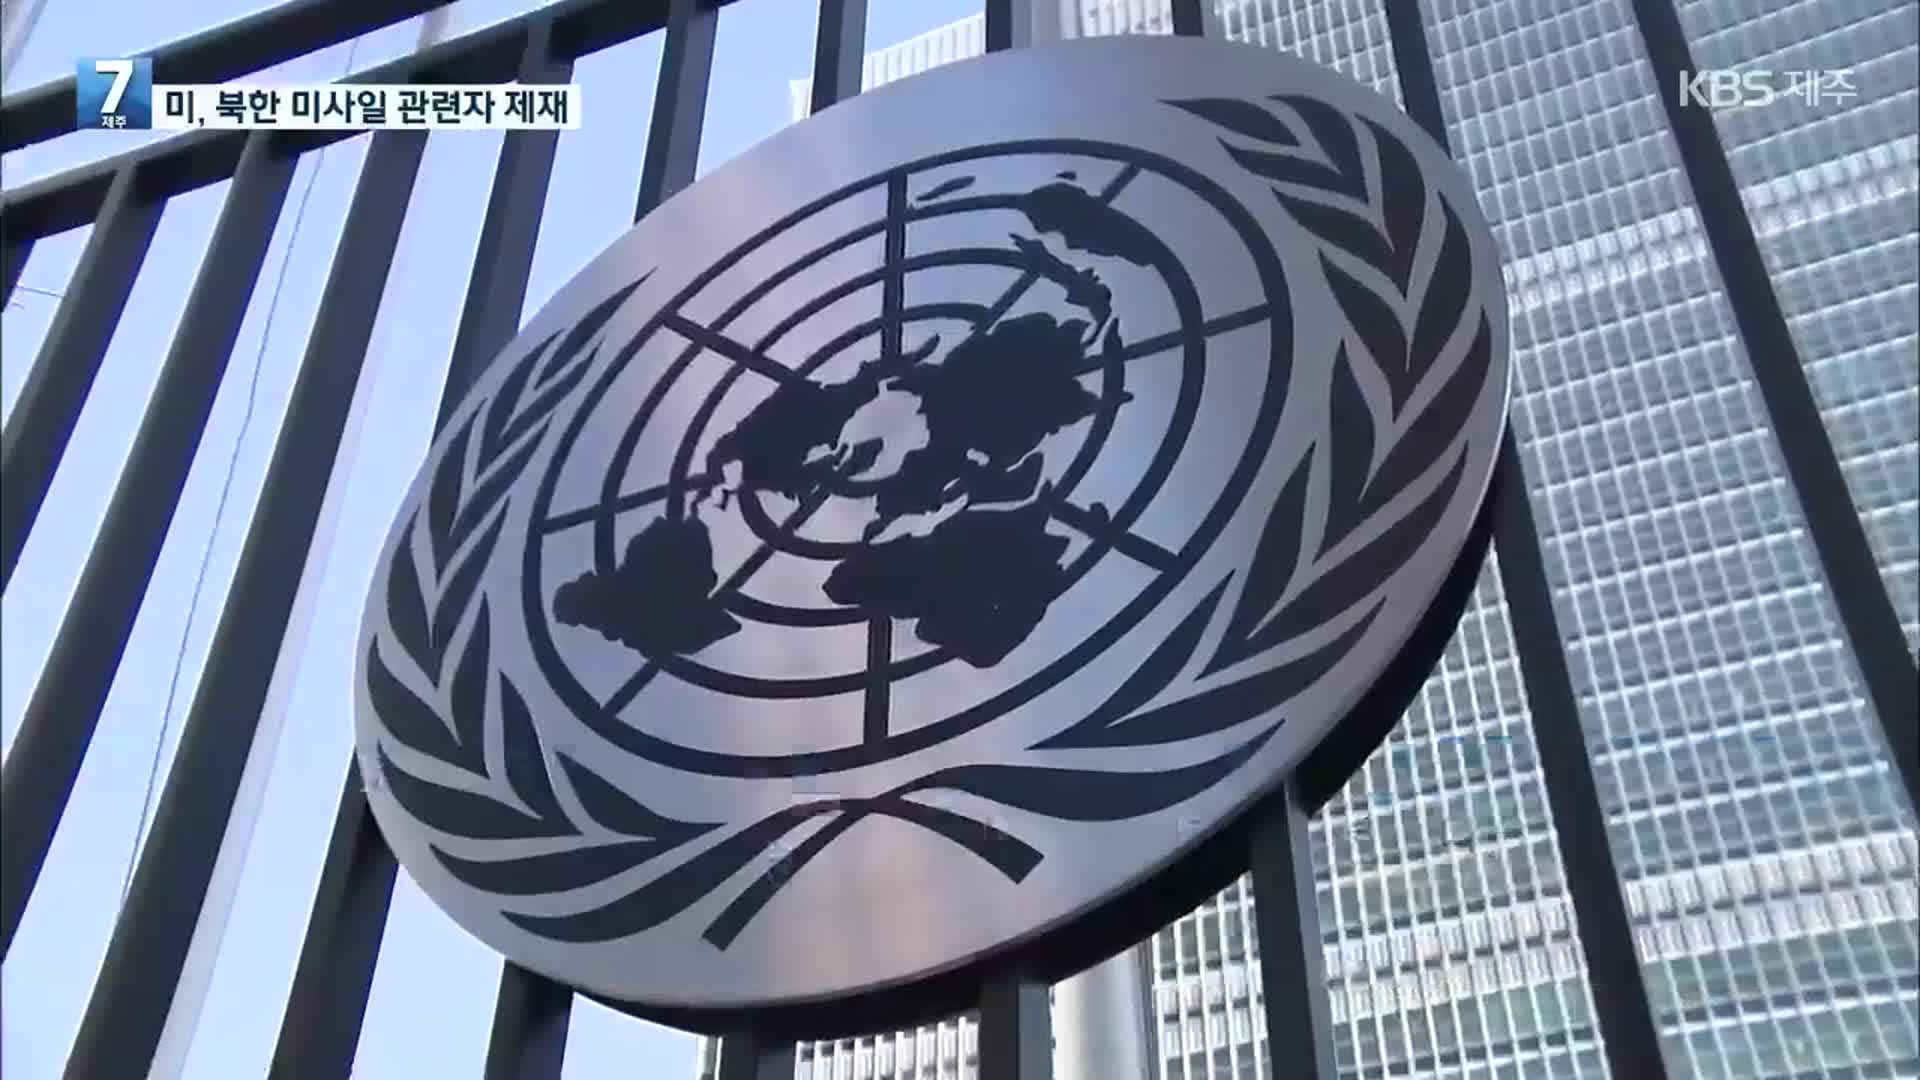 美, 北 탄도미사일 발사에 관련자 7명 제재…유엔에 제재 대상 추가 제안